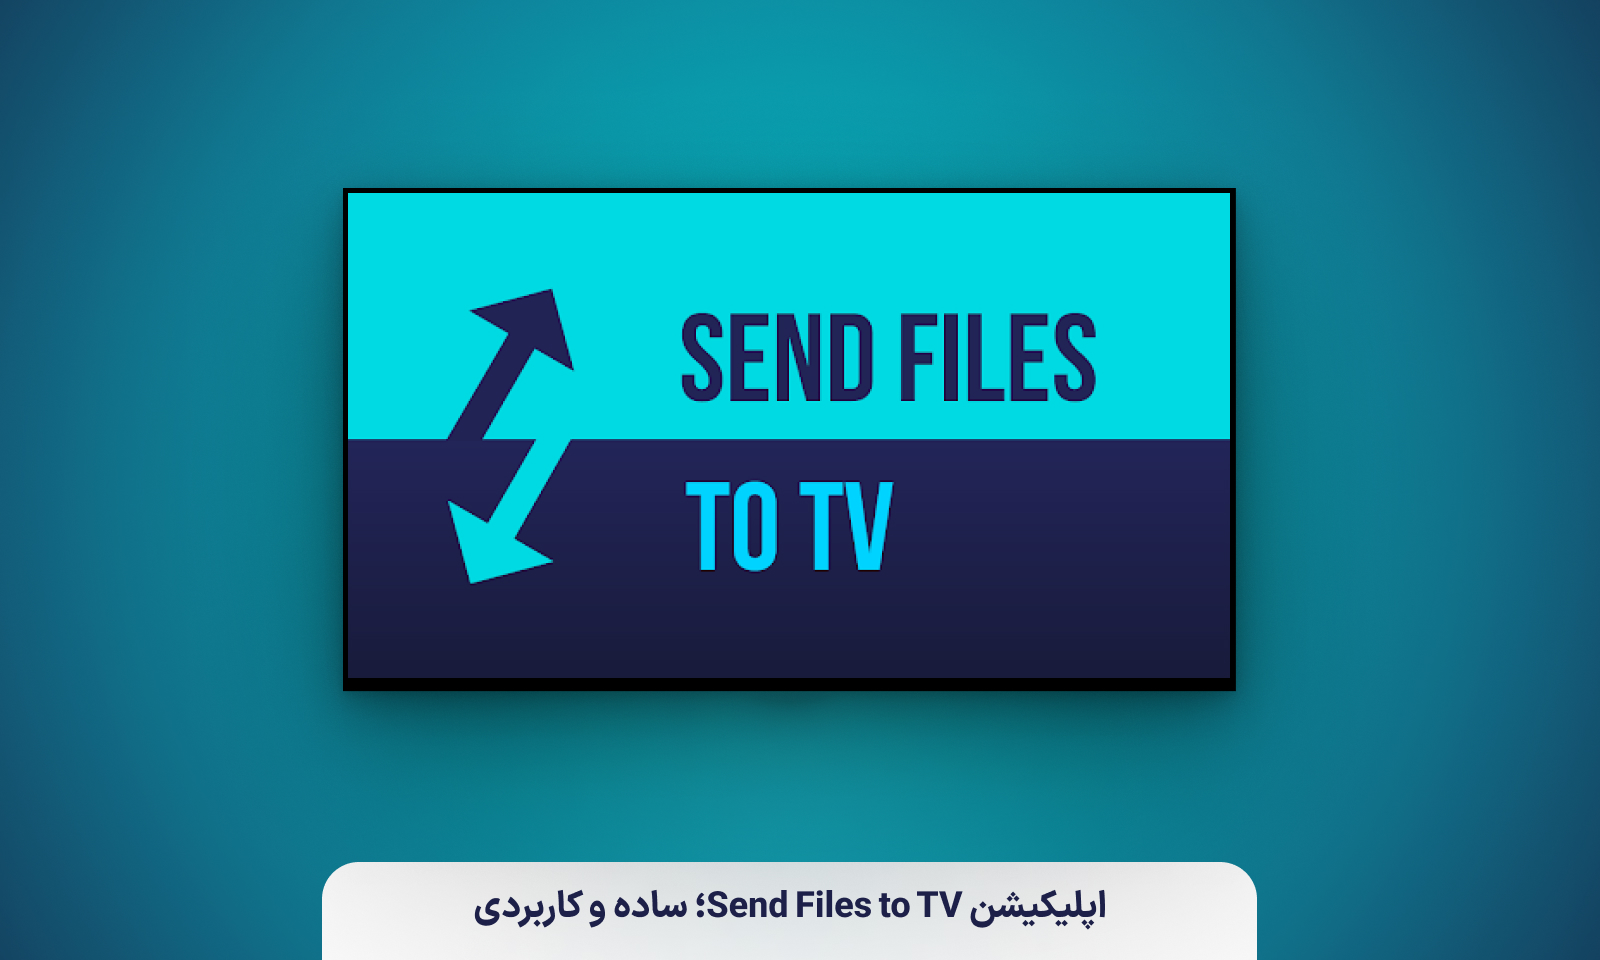 اپلیکیشن Send Files to TV؛ ساده و کاربردی